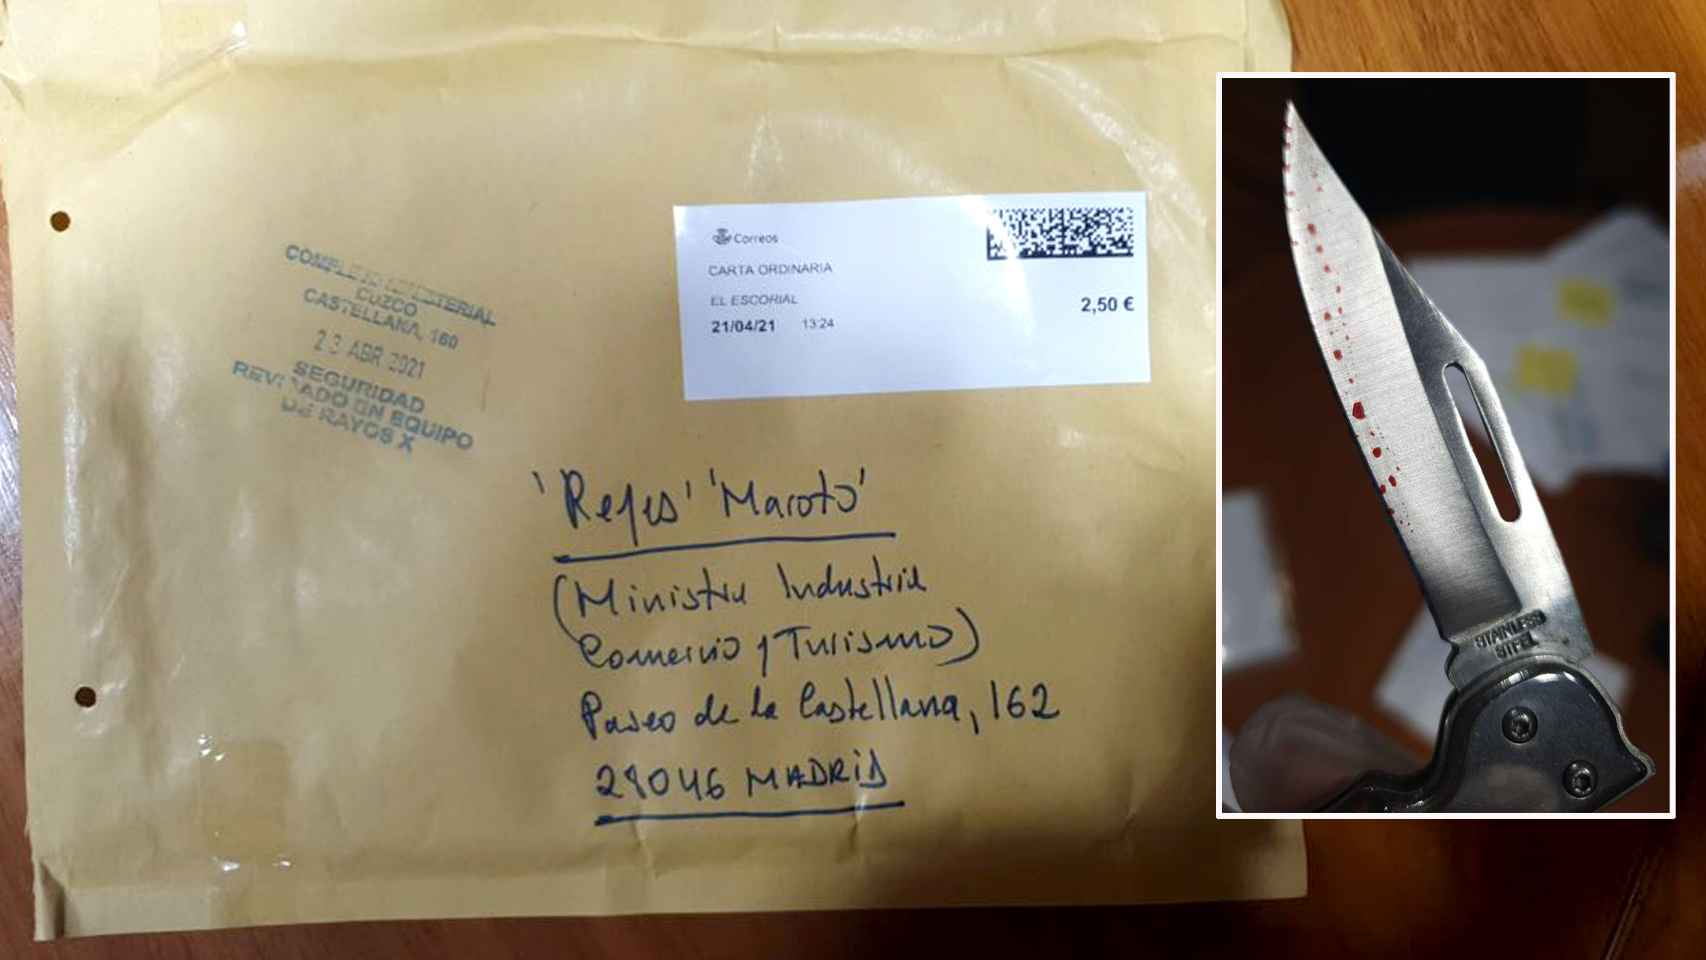 El sobre que contenía una navaja ensangrentada, remitido al Ministerio de Industria a nombre de Reyes Maroto.